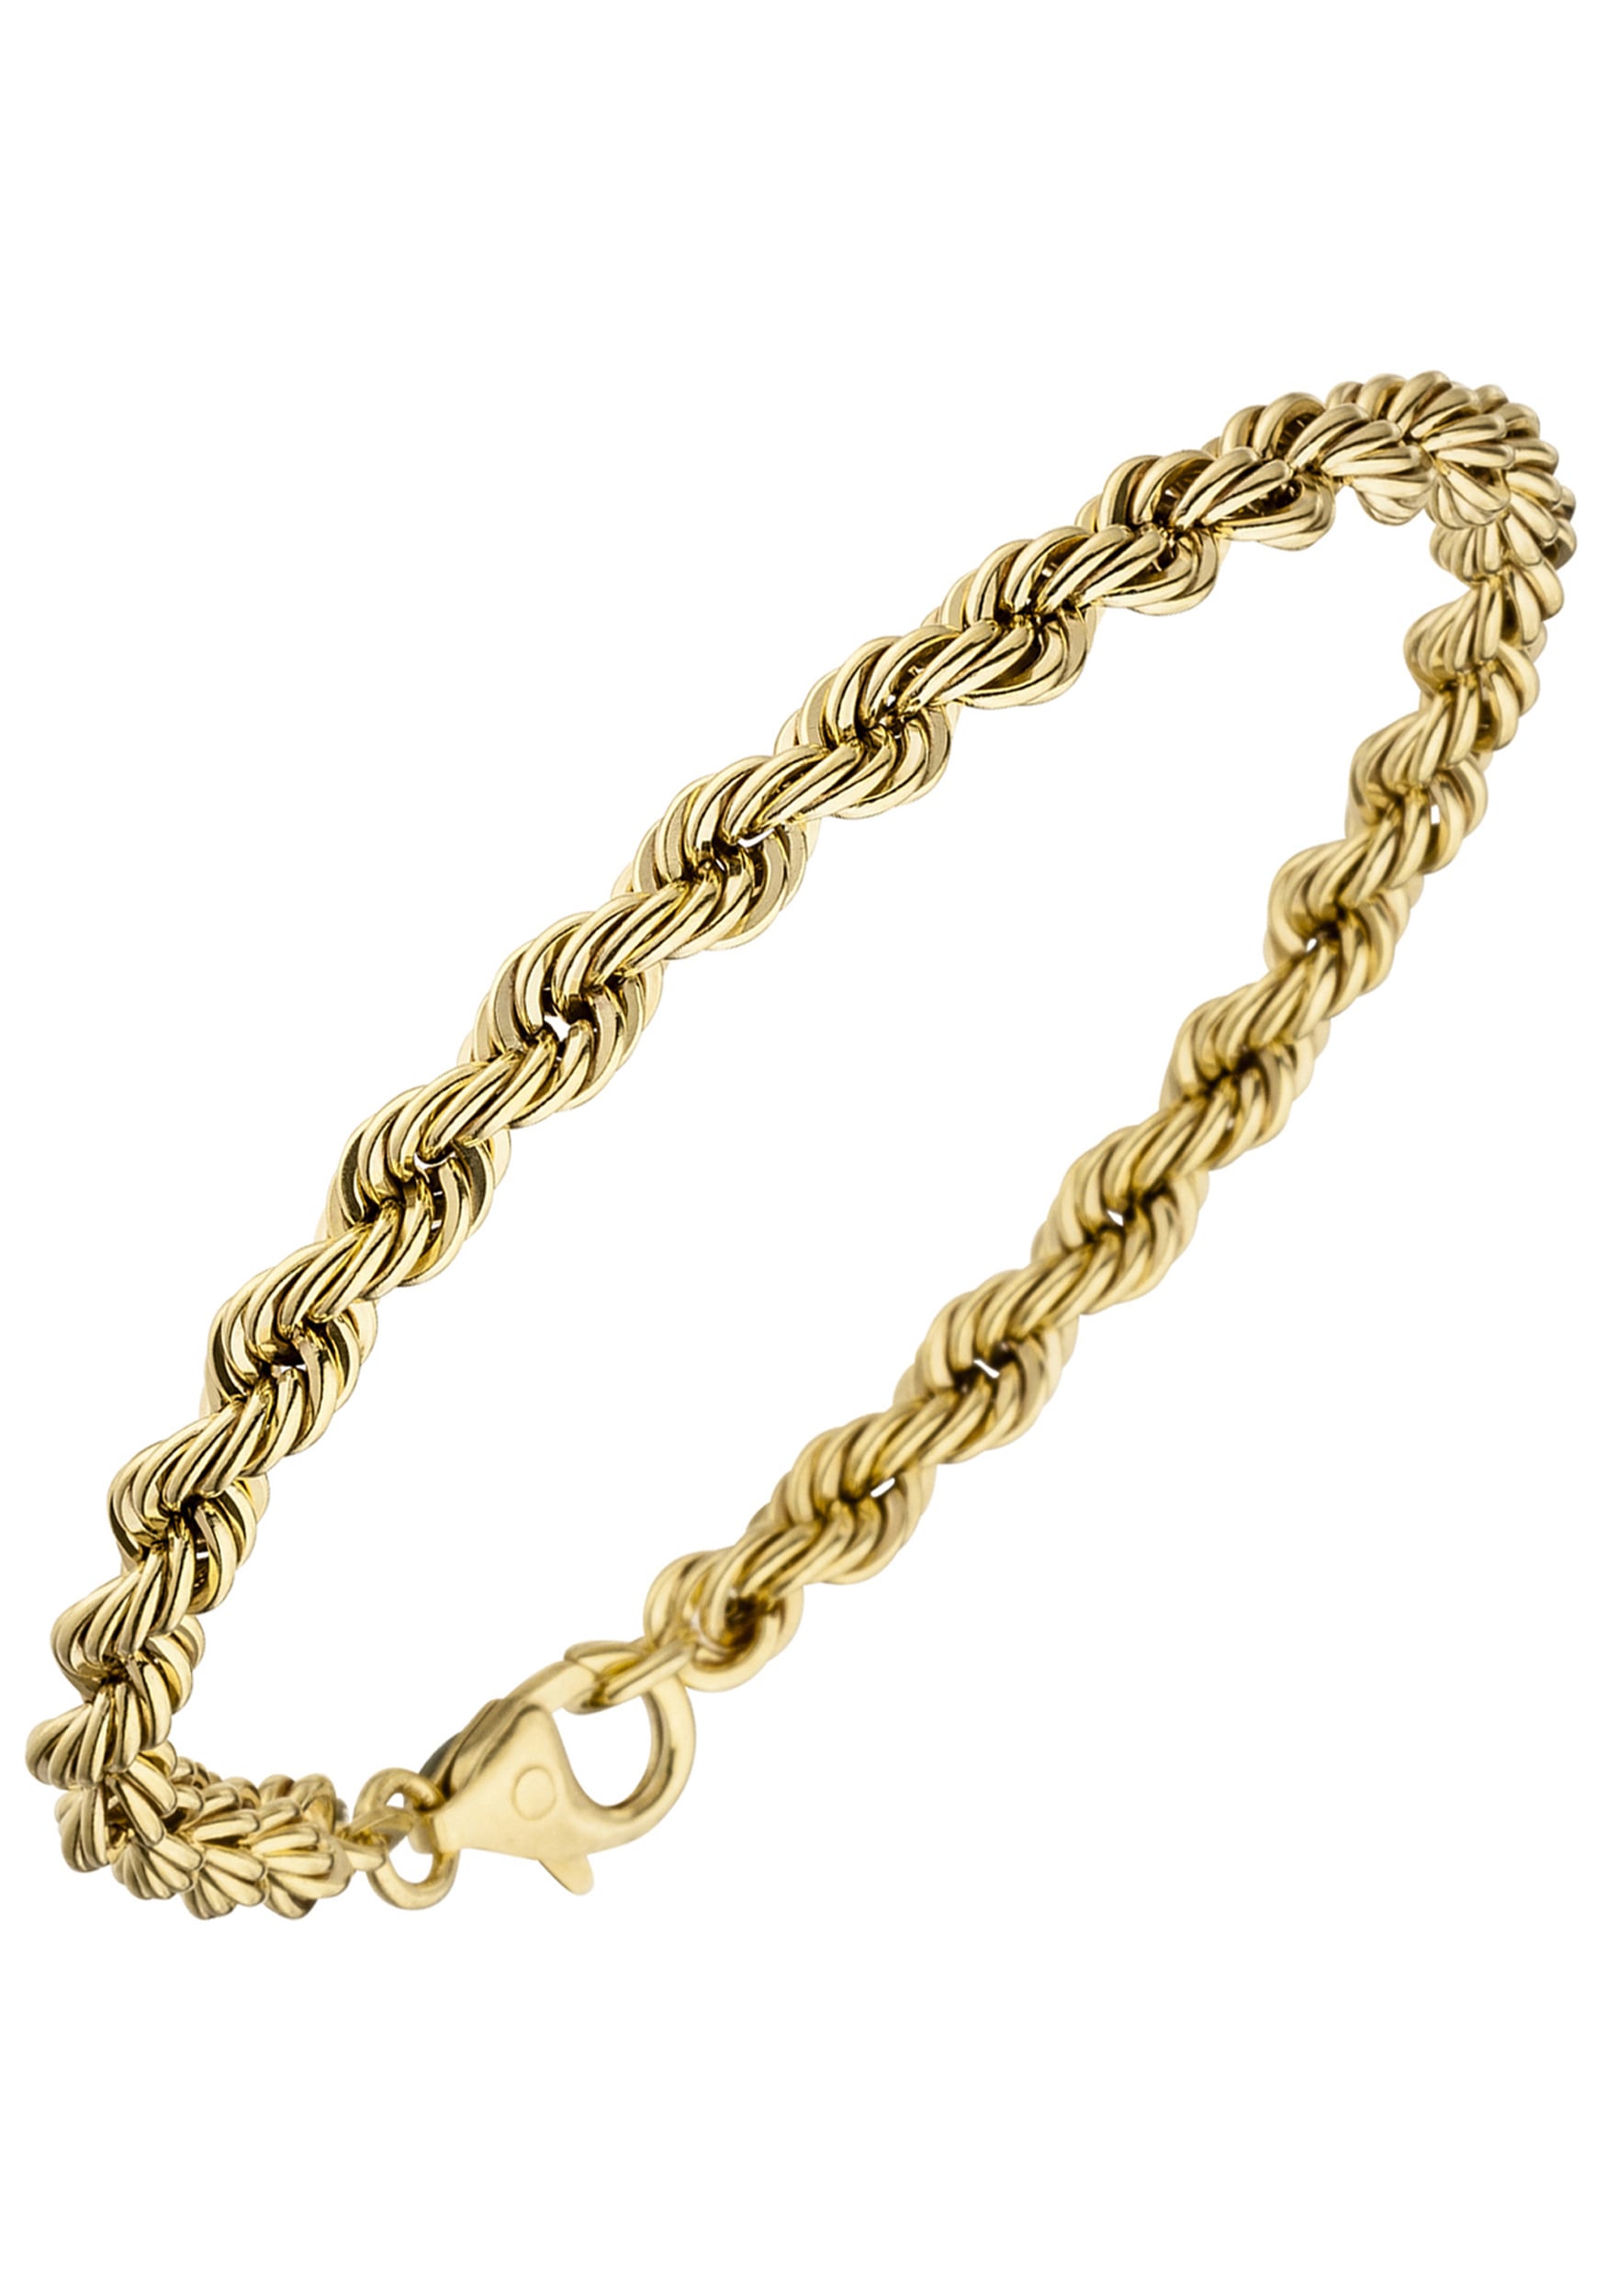 Goldarmband, Kordelarmband 585 Gold 19 cm